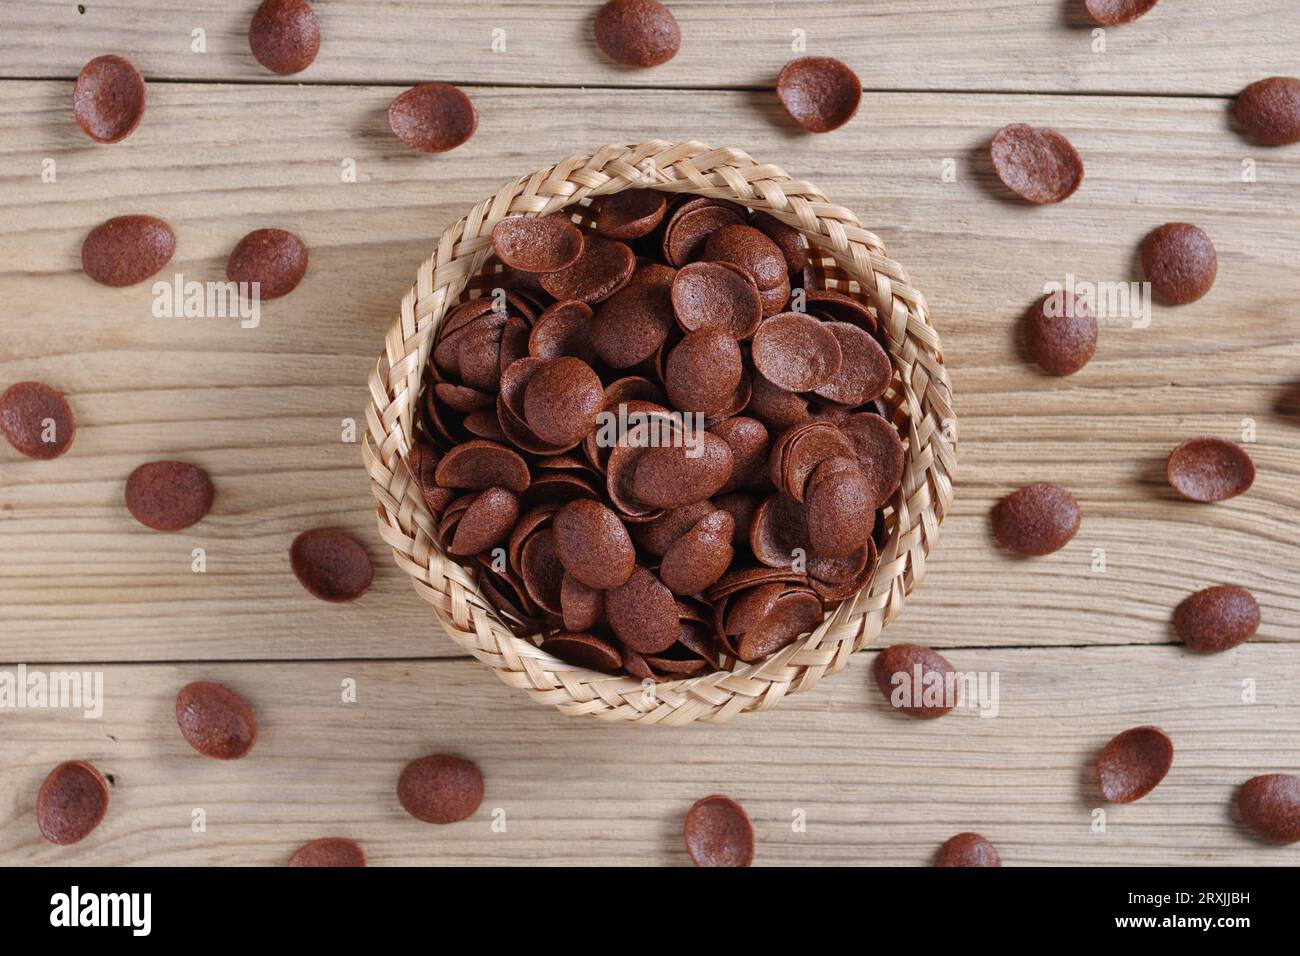 Directamente encima de la vista de los copos de maíz de chocolate en el tazón de mimbre sobre fondo de madera Foto de stock